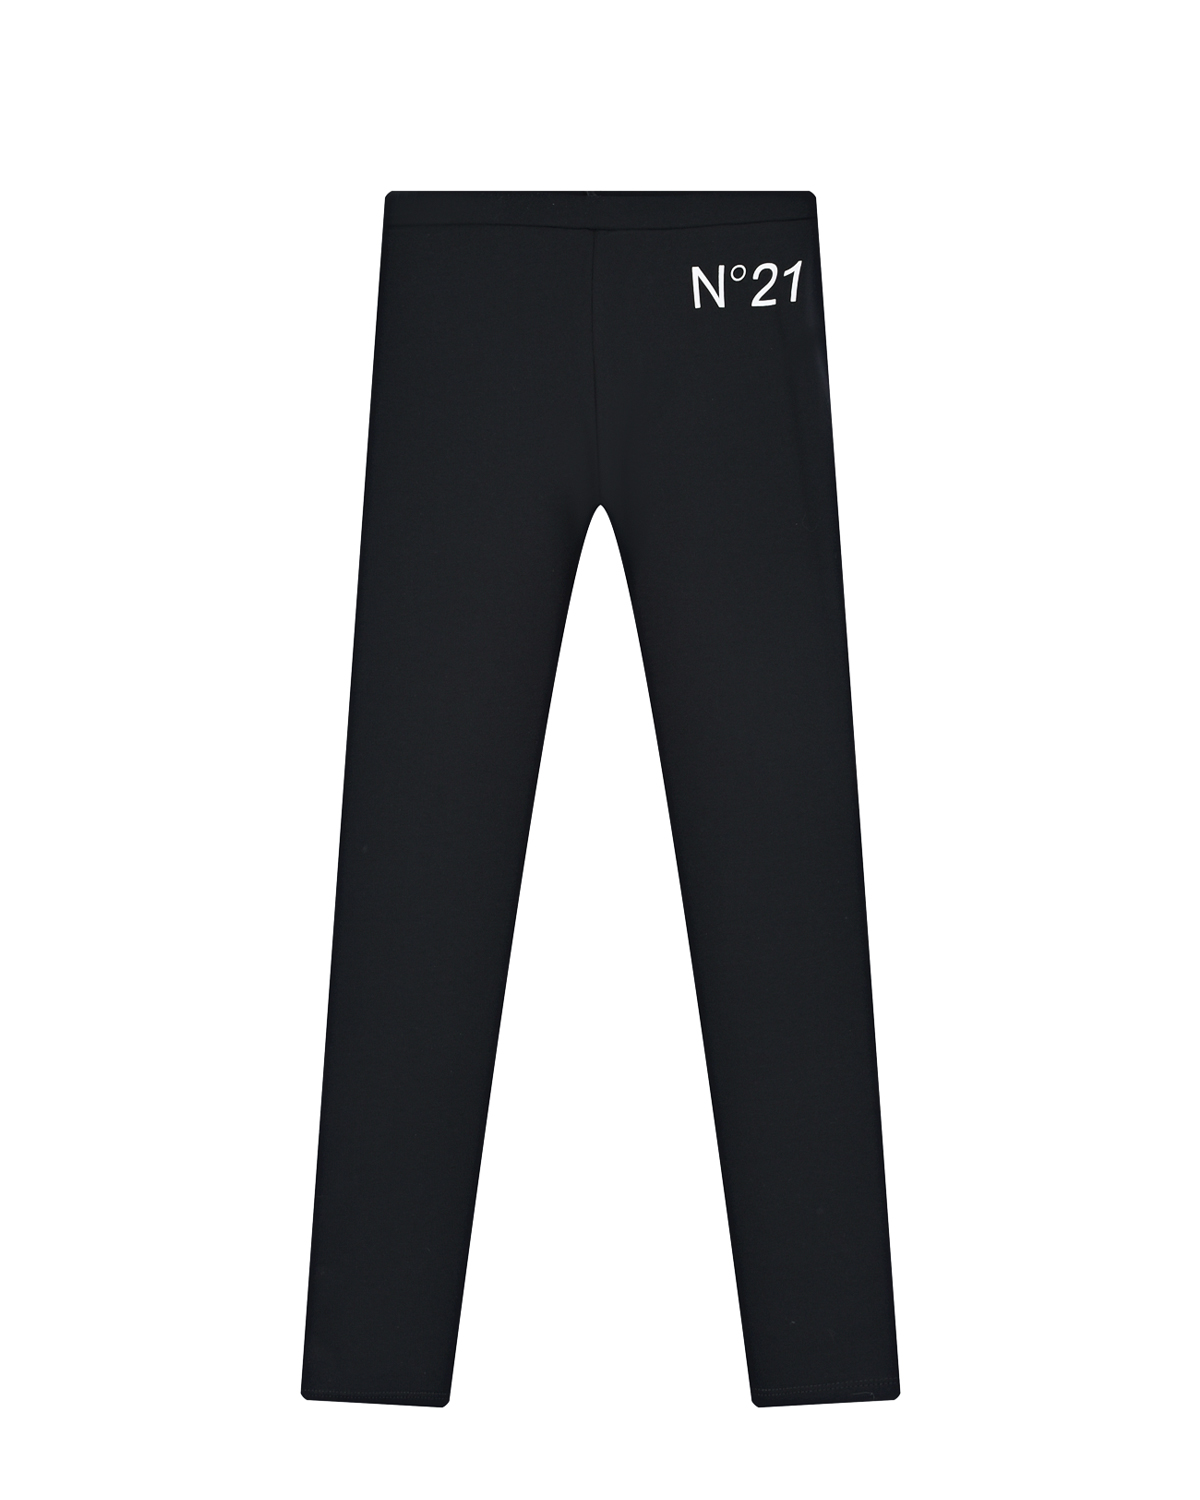 Черные леггинсы с контрастным лого No. 21 детские, размер 104, цвет черный